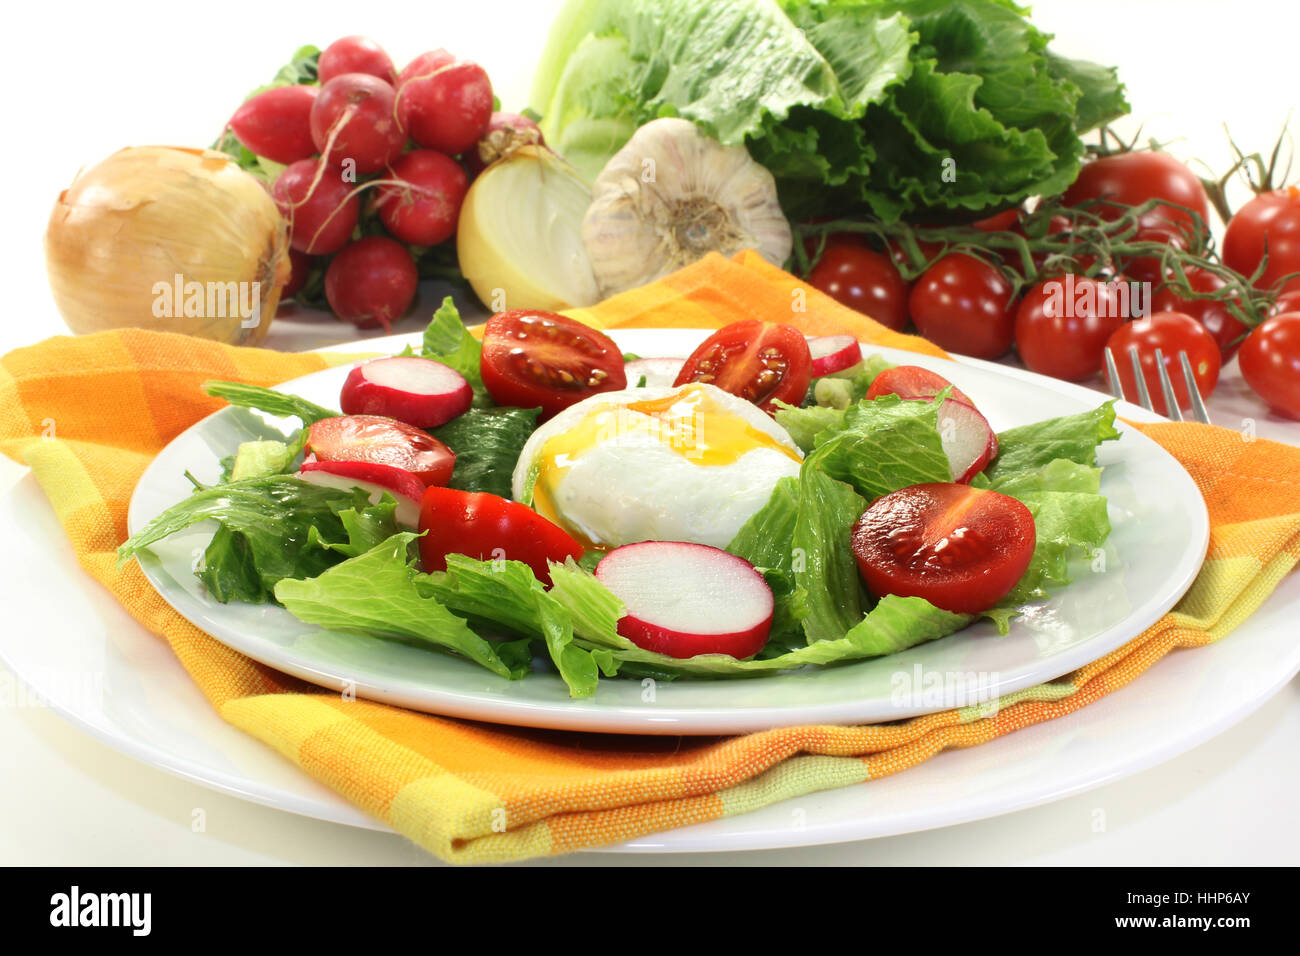 bread, green, lost, vegetable, onion, vinegar, dressing, egg, eggs, radish, Stock Photo